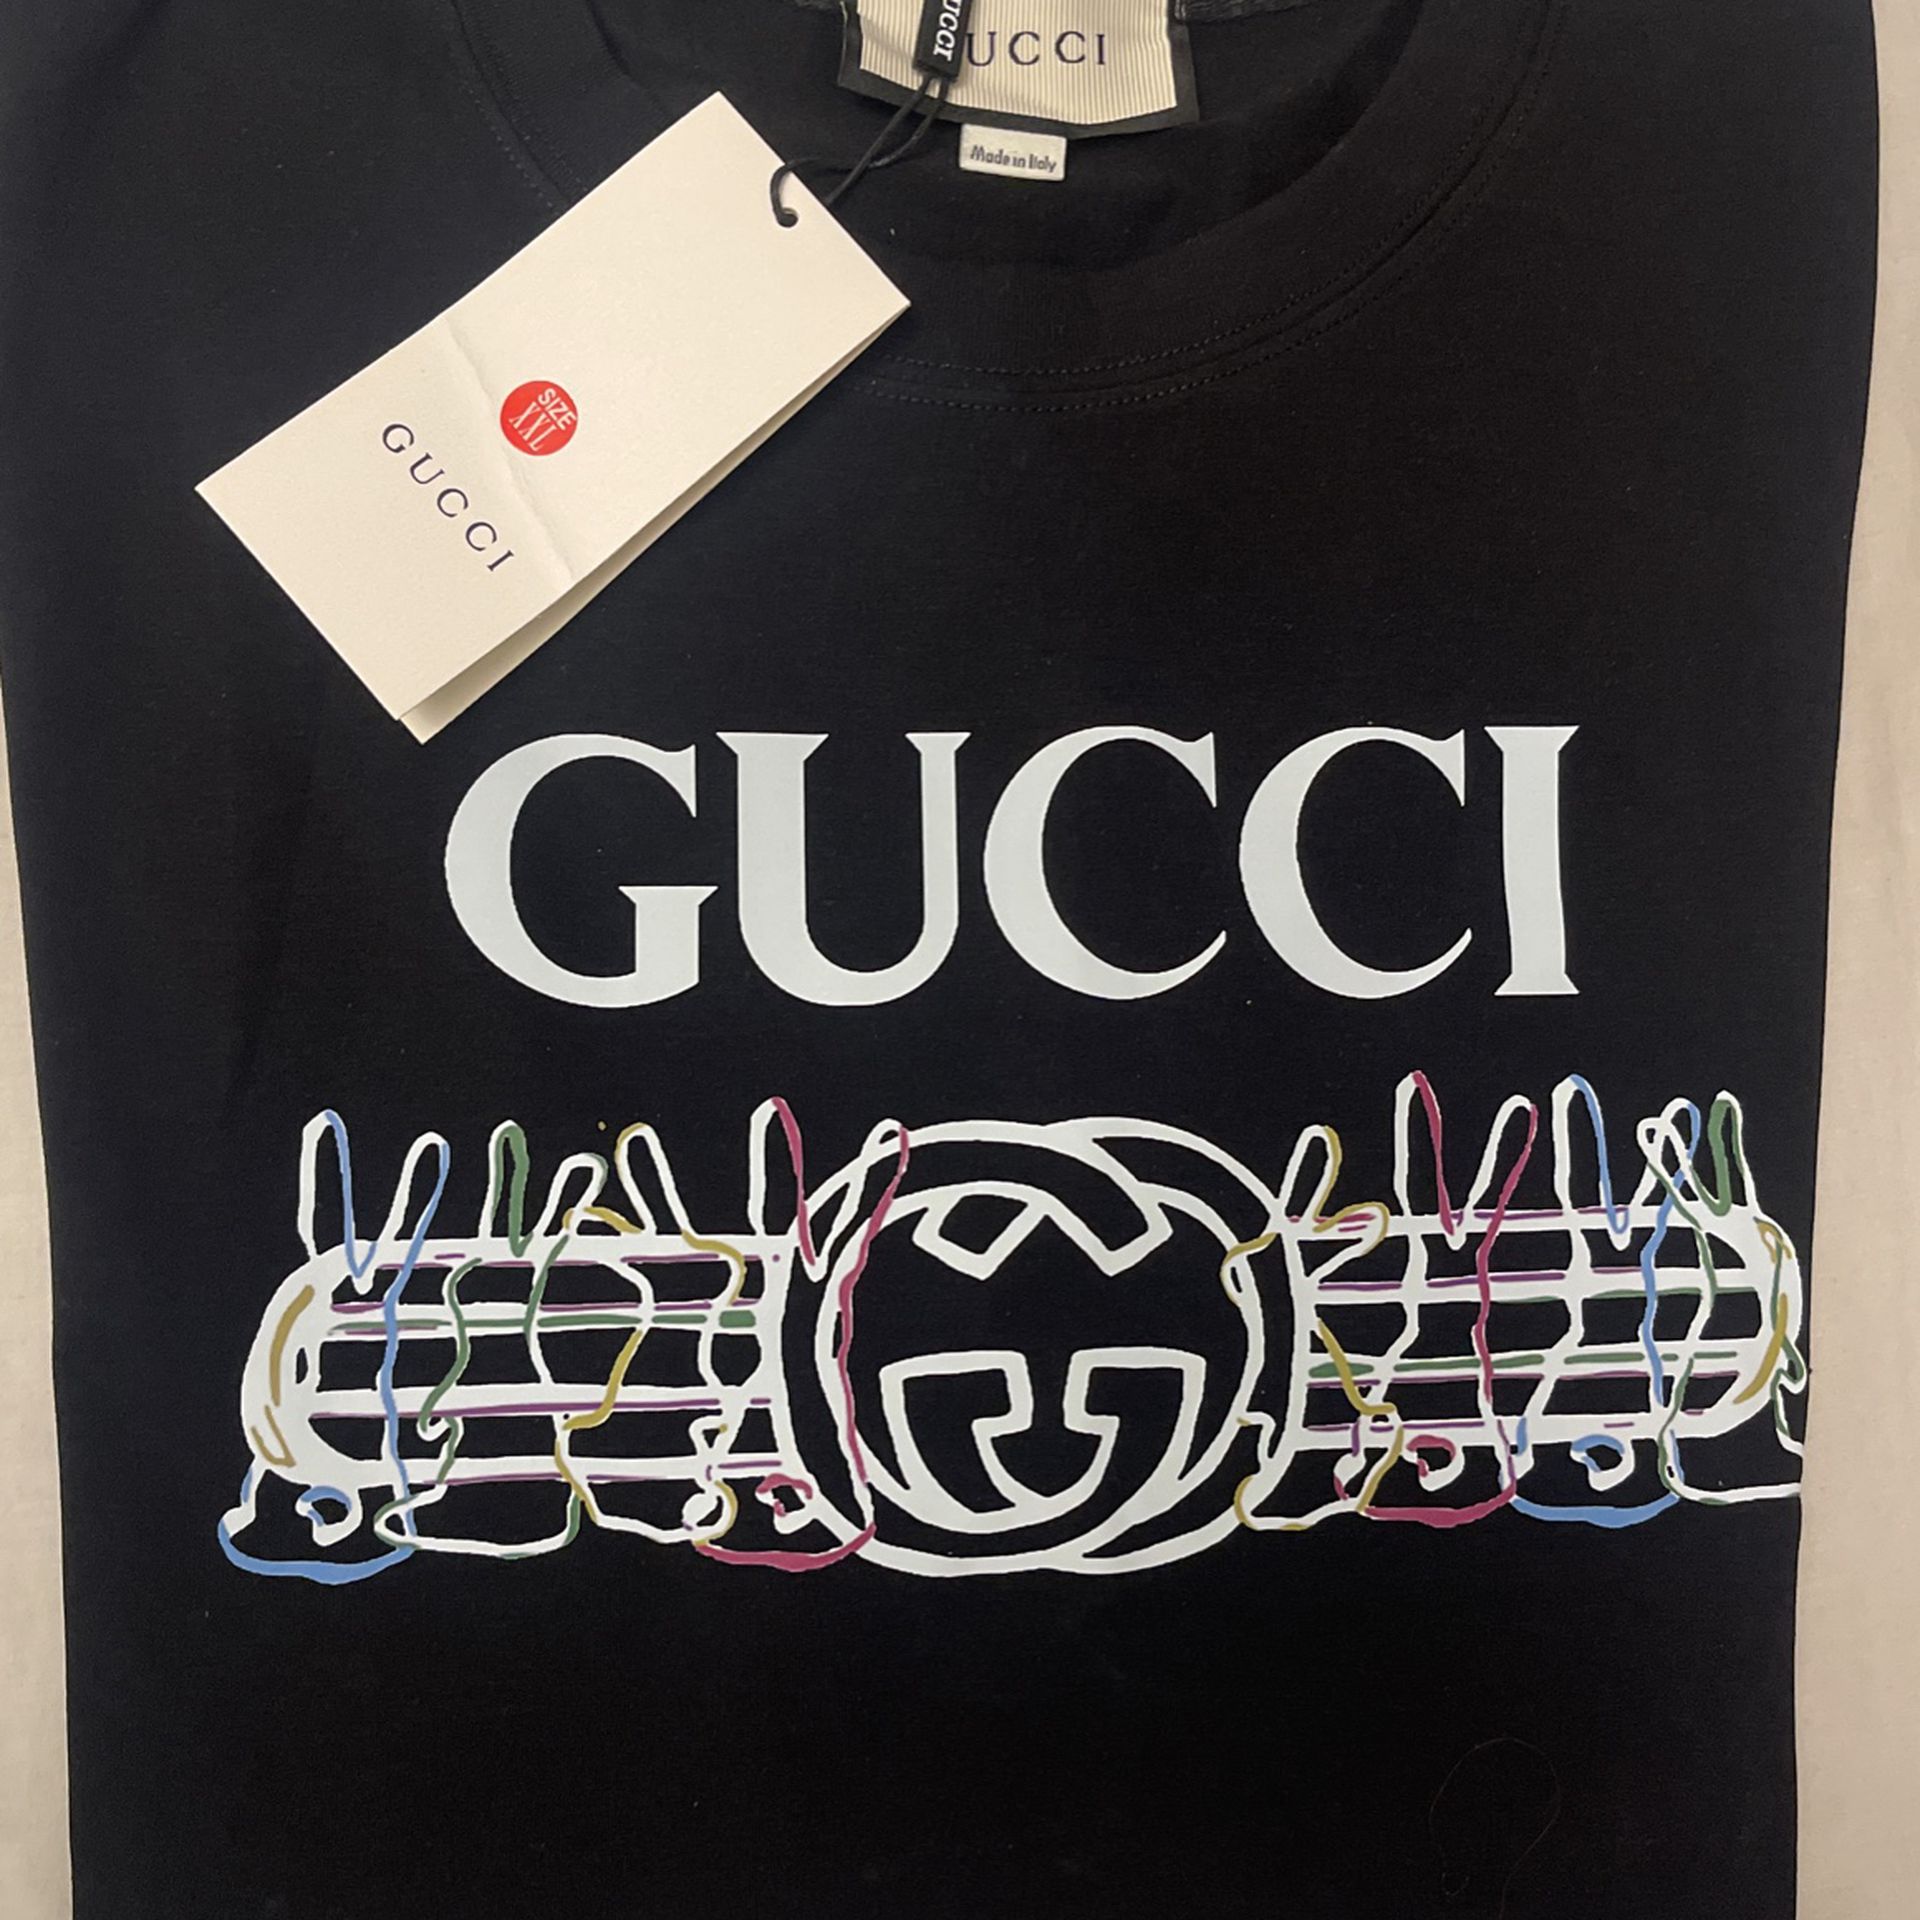 Gucci T-shirt Size Xxl